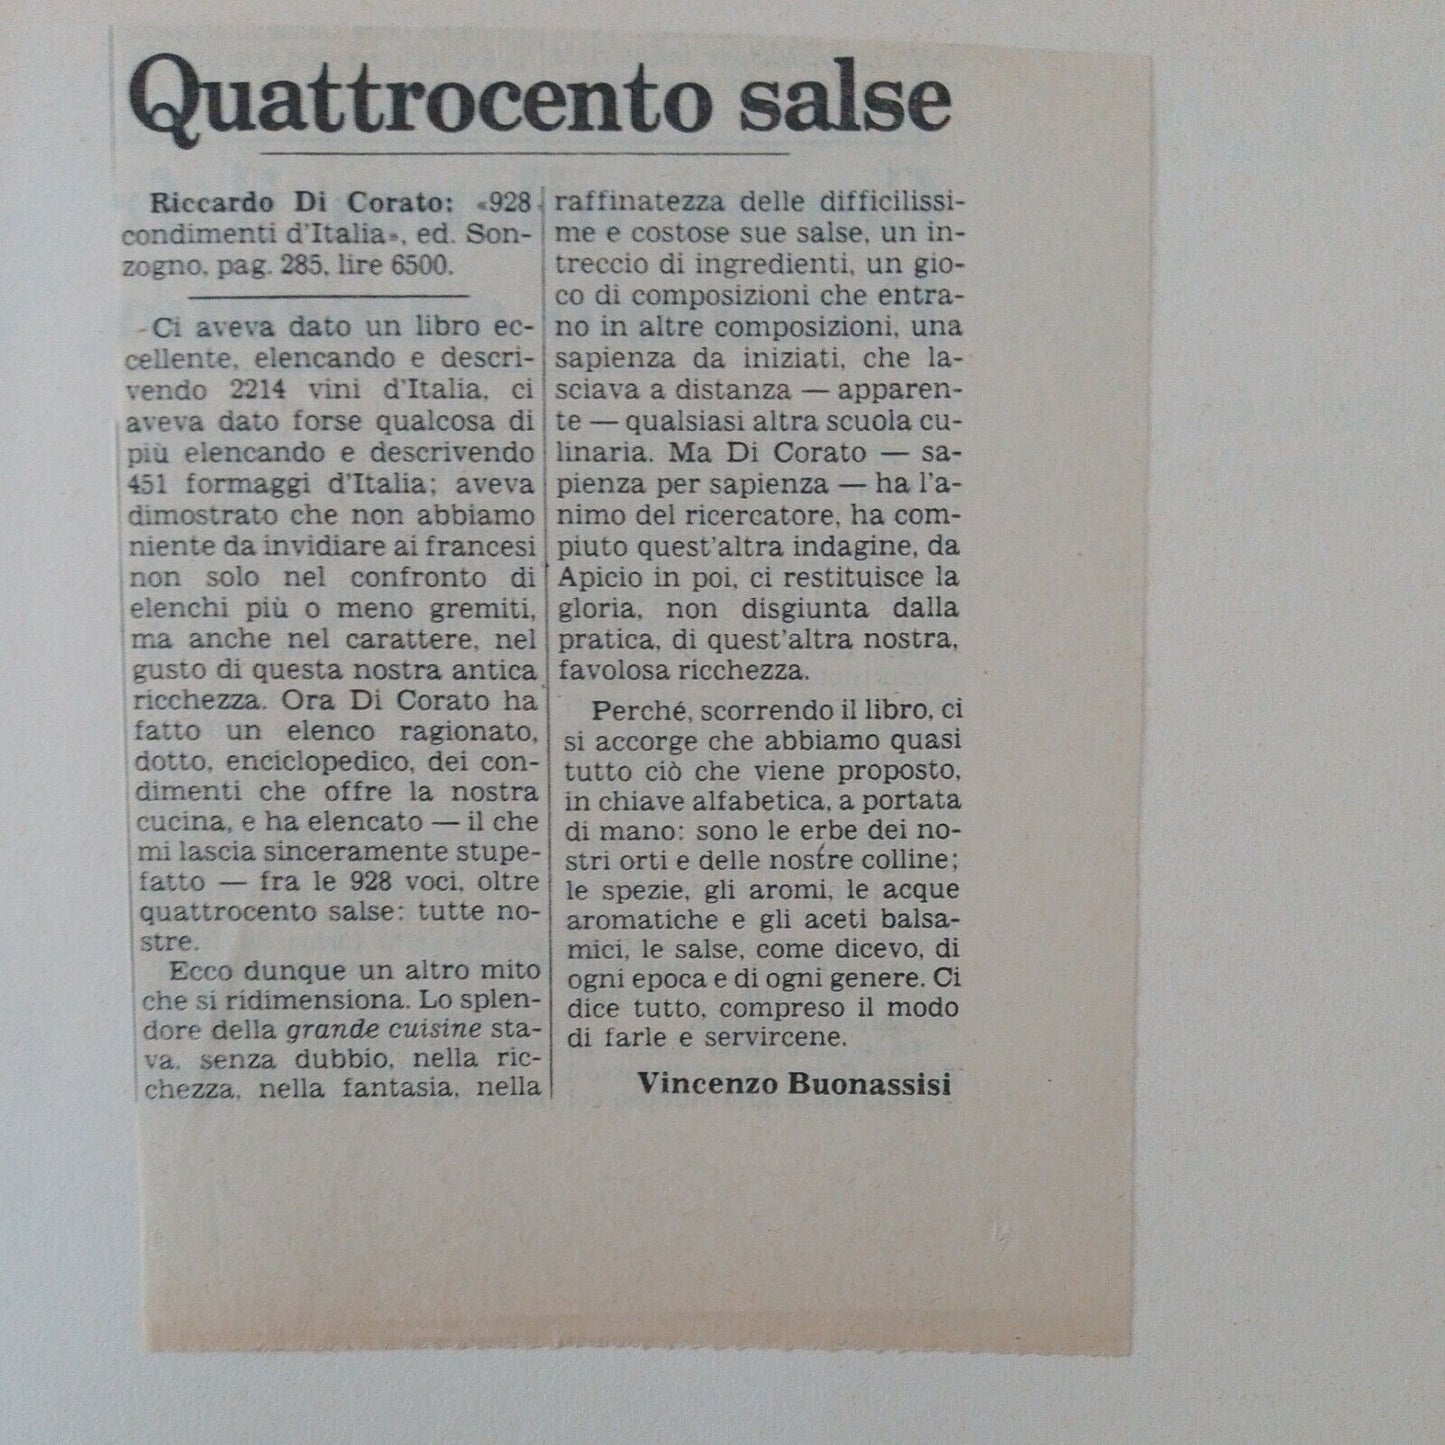 928 CONDIMENTS OF ITALY, Riccardo Di Corato, SONZOGNO 1978